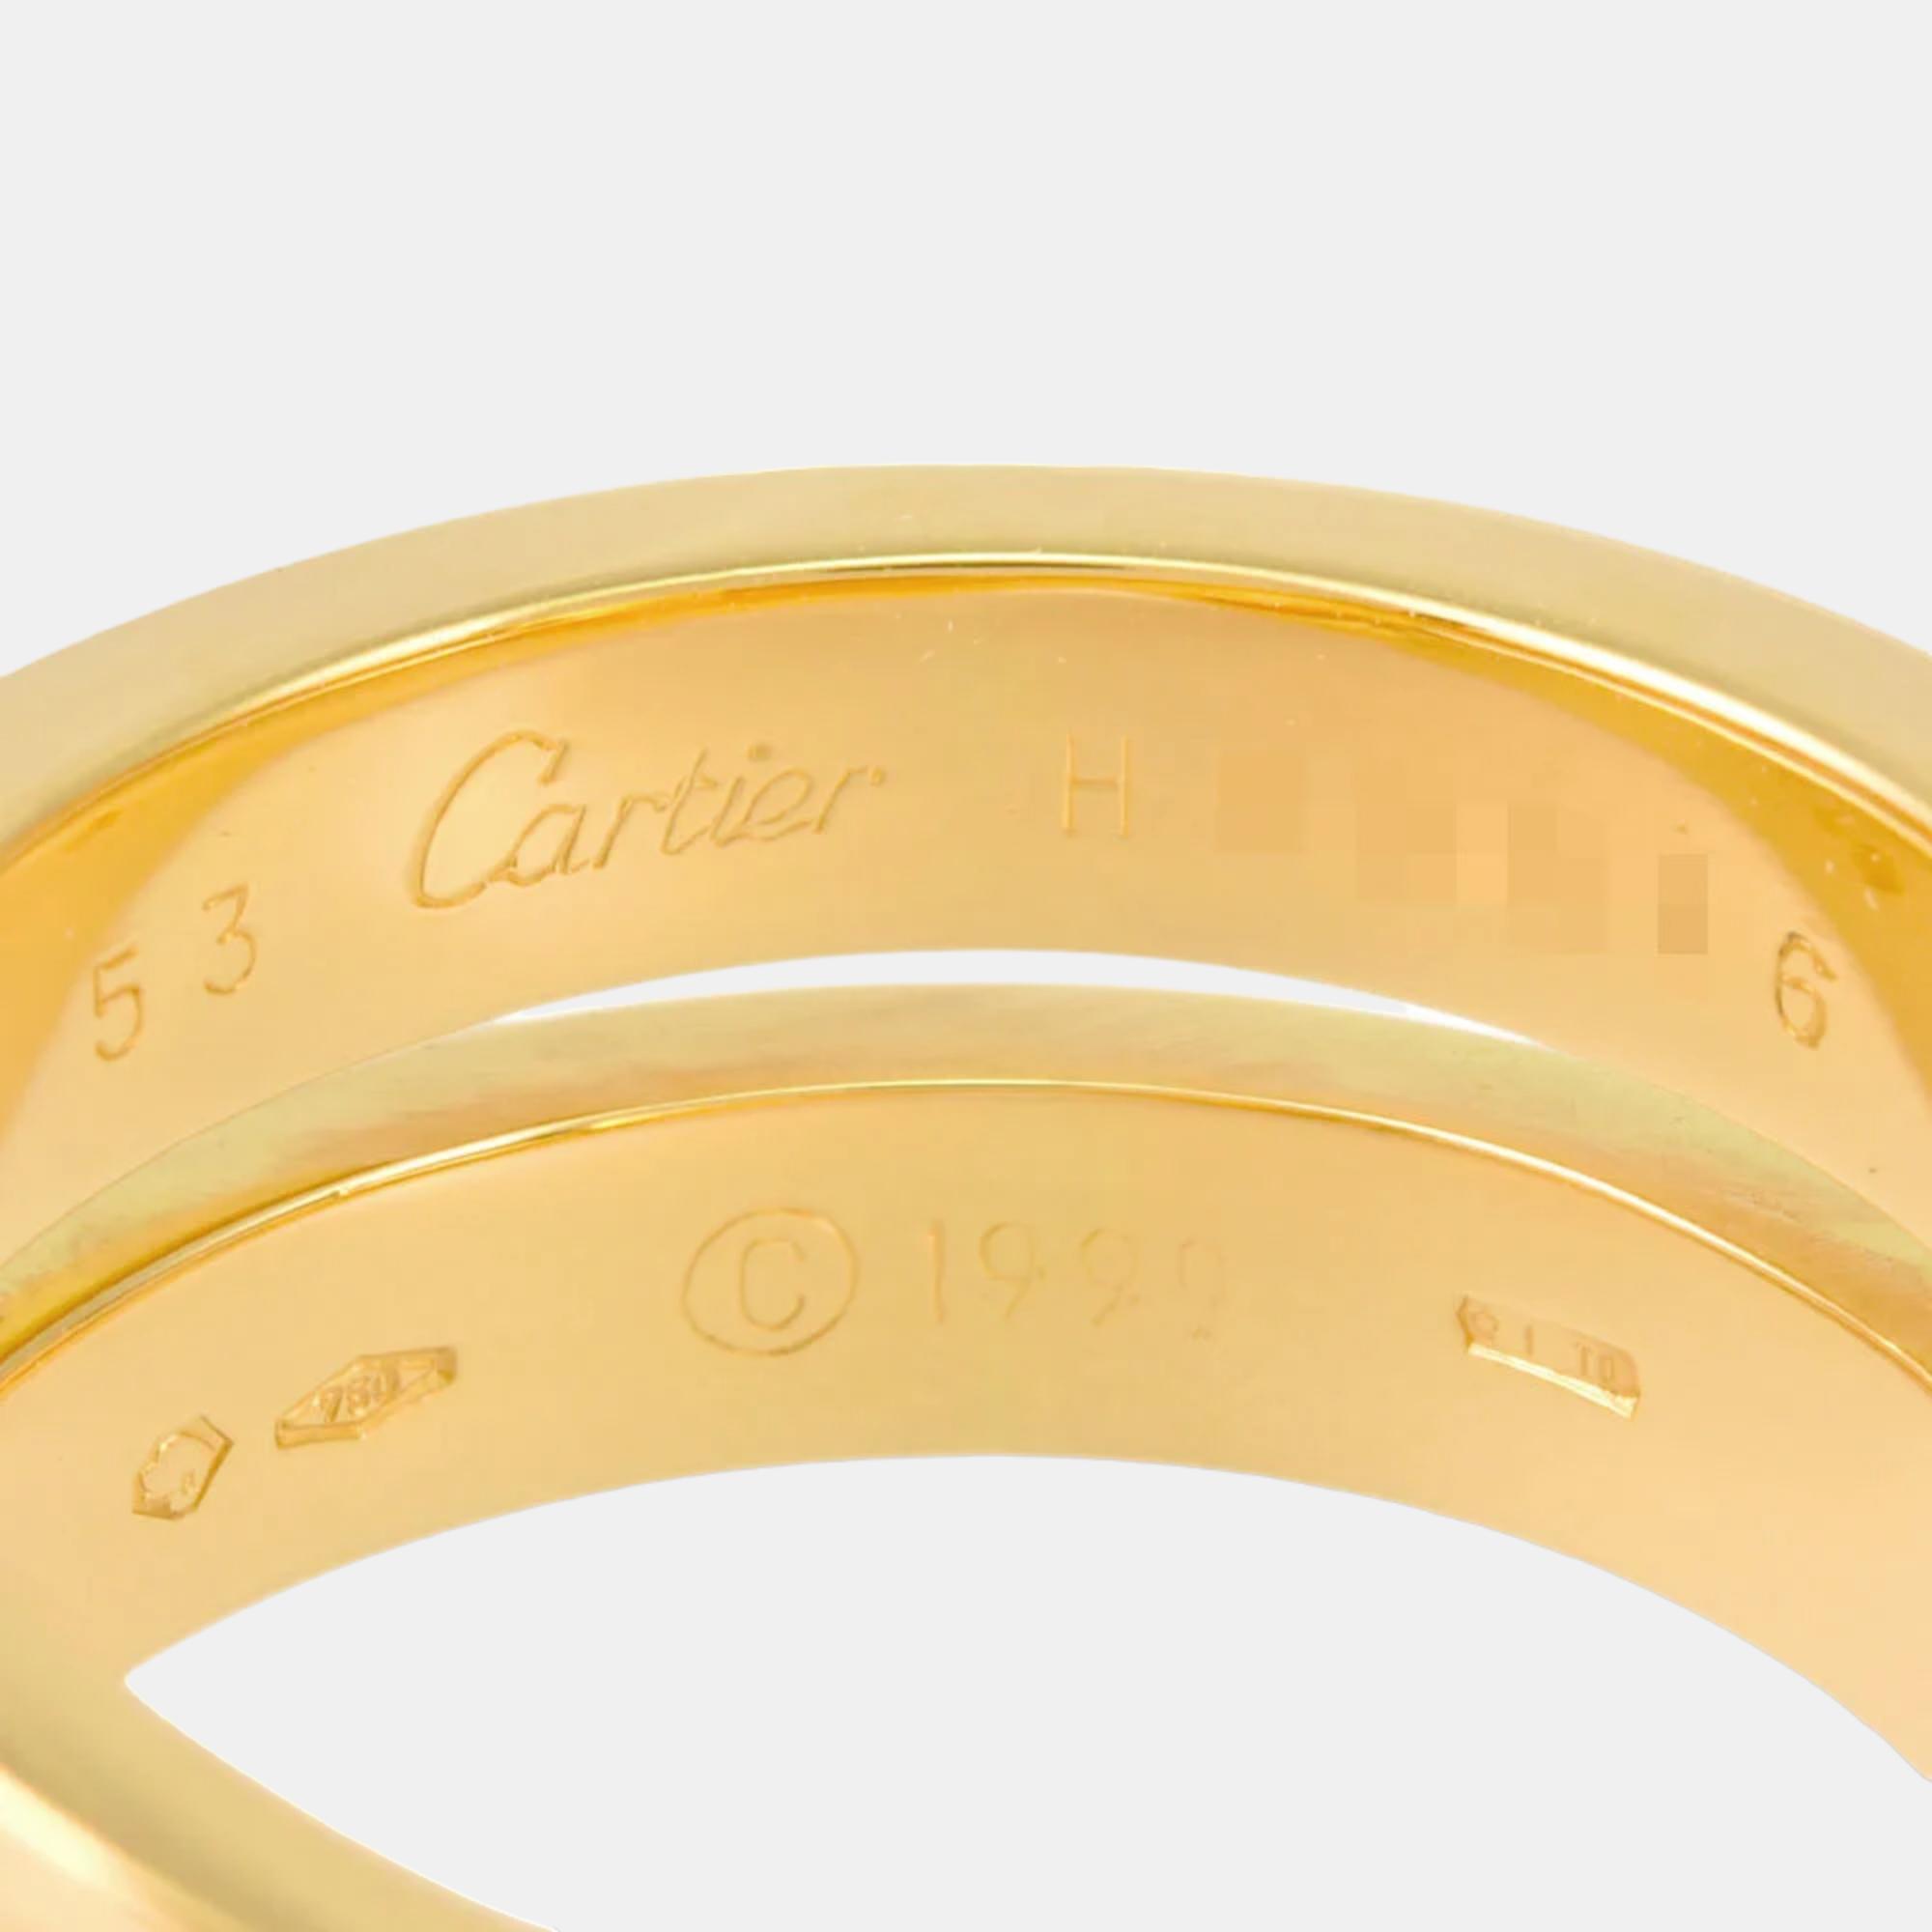 Cartier Paris Nouvelle Vague 18K Yellow Gold Ring EU 53